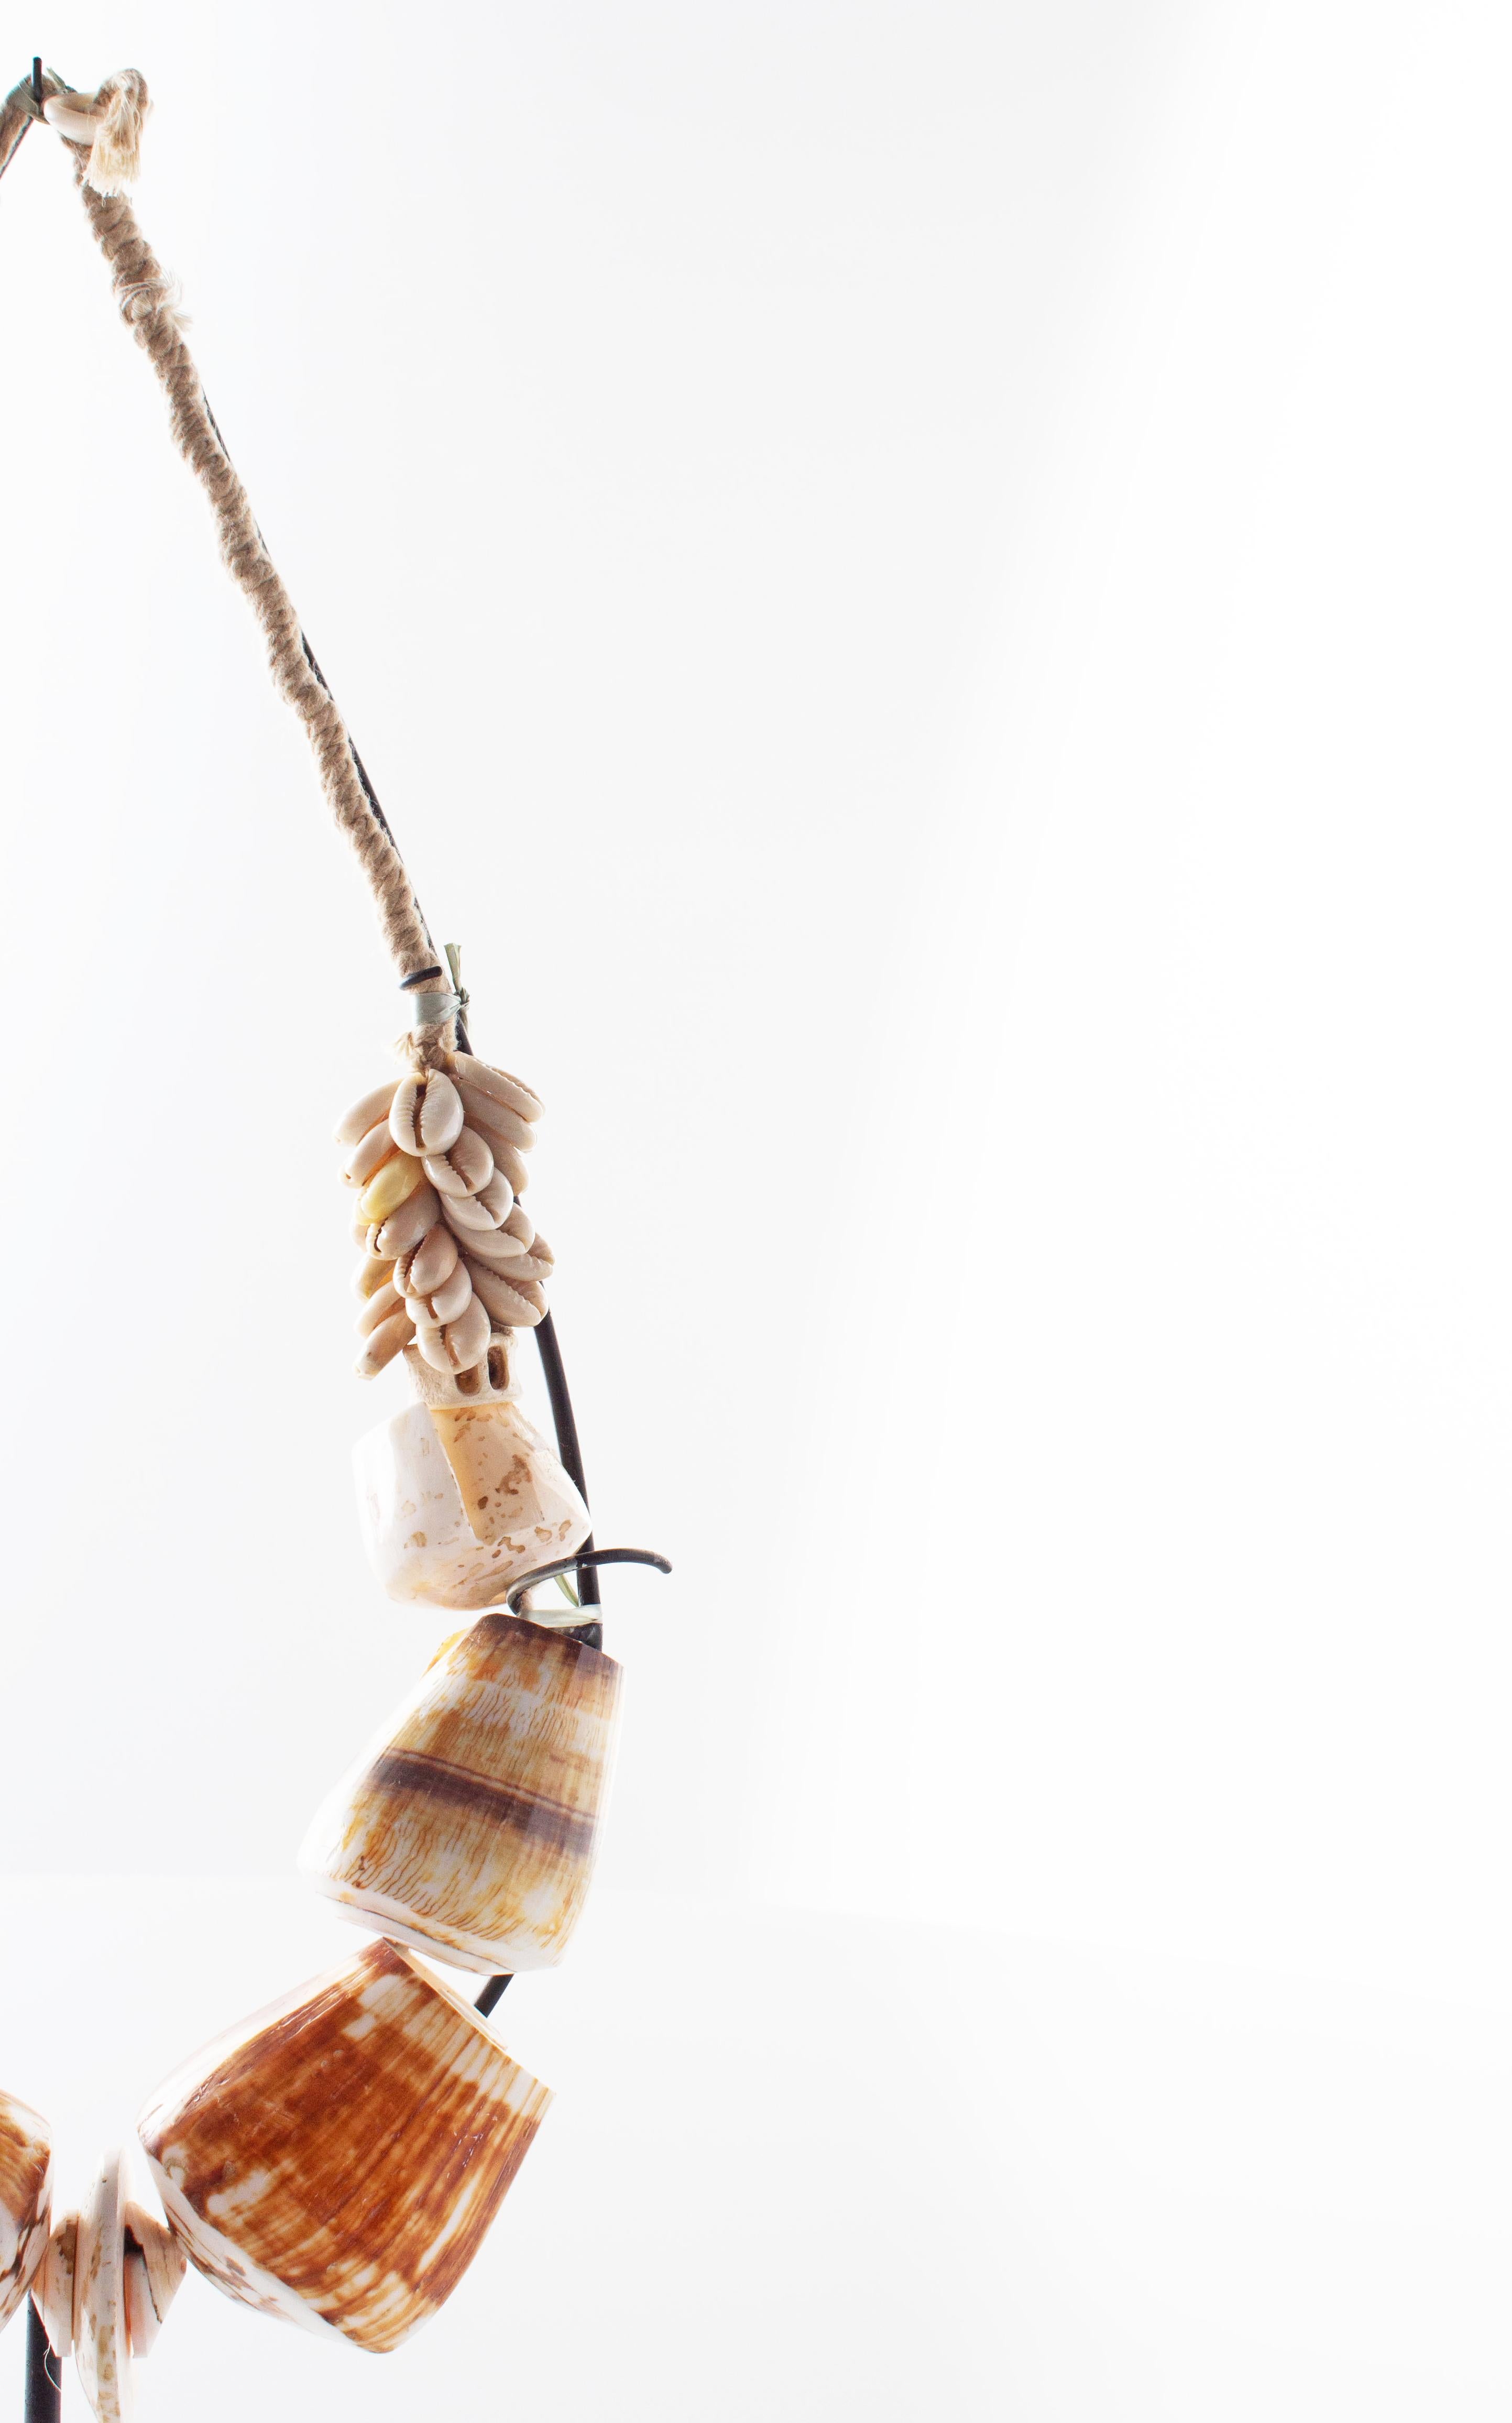 Südasiatische Halskette, einschließlich Ständer. In meinem Vintage-, Bio-, Contemporary- und Mid-Century Modern-Stil.

Dieses Stück ist Teil von Brendan Bass' einzigartiger Kollektion Le Monde. Die Kollektion Le Monde, französisch für 